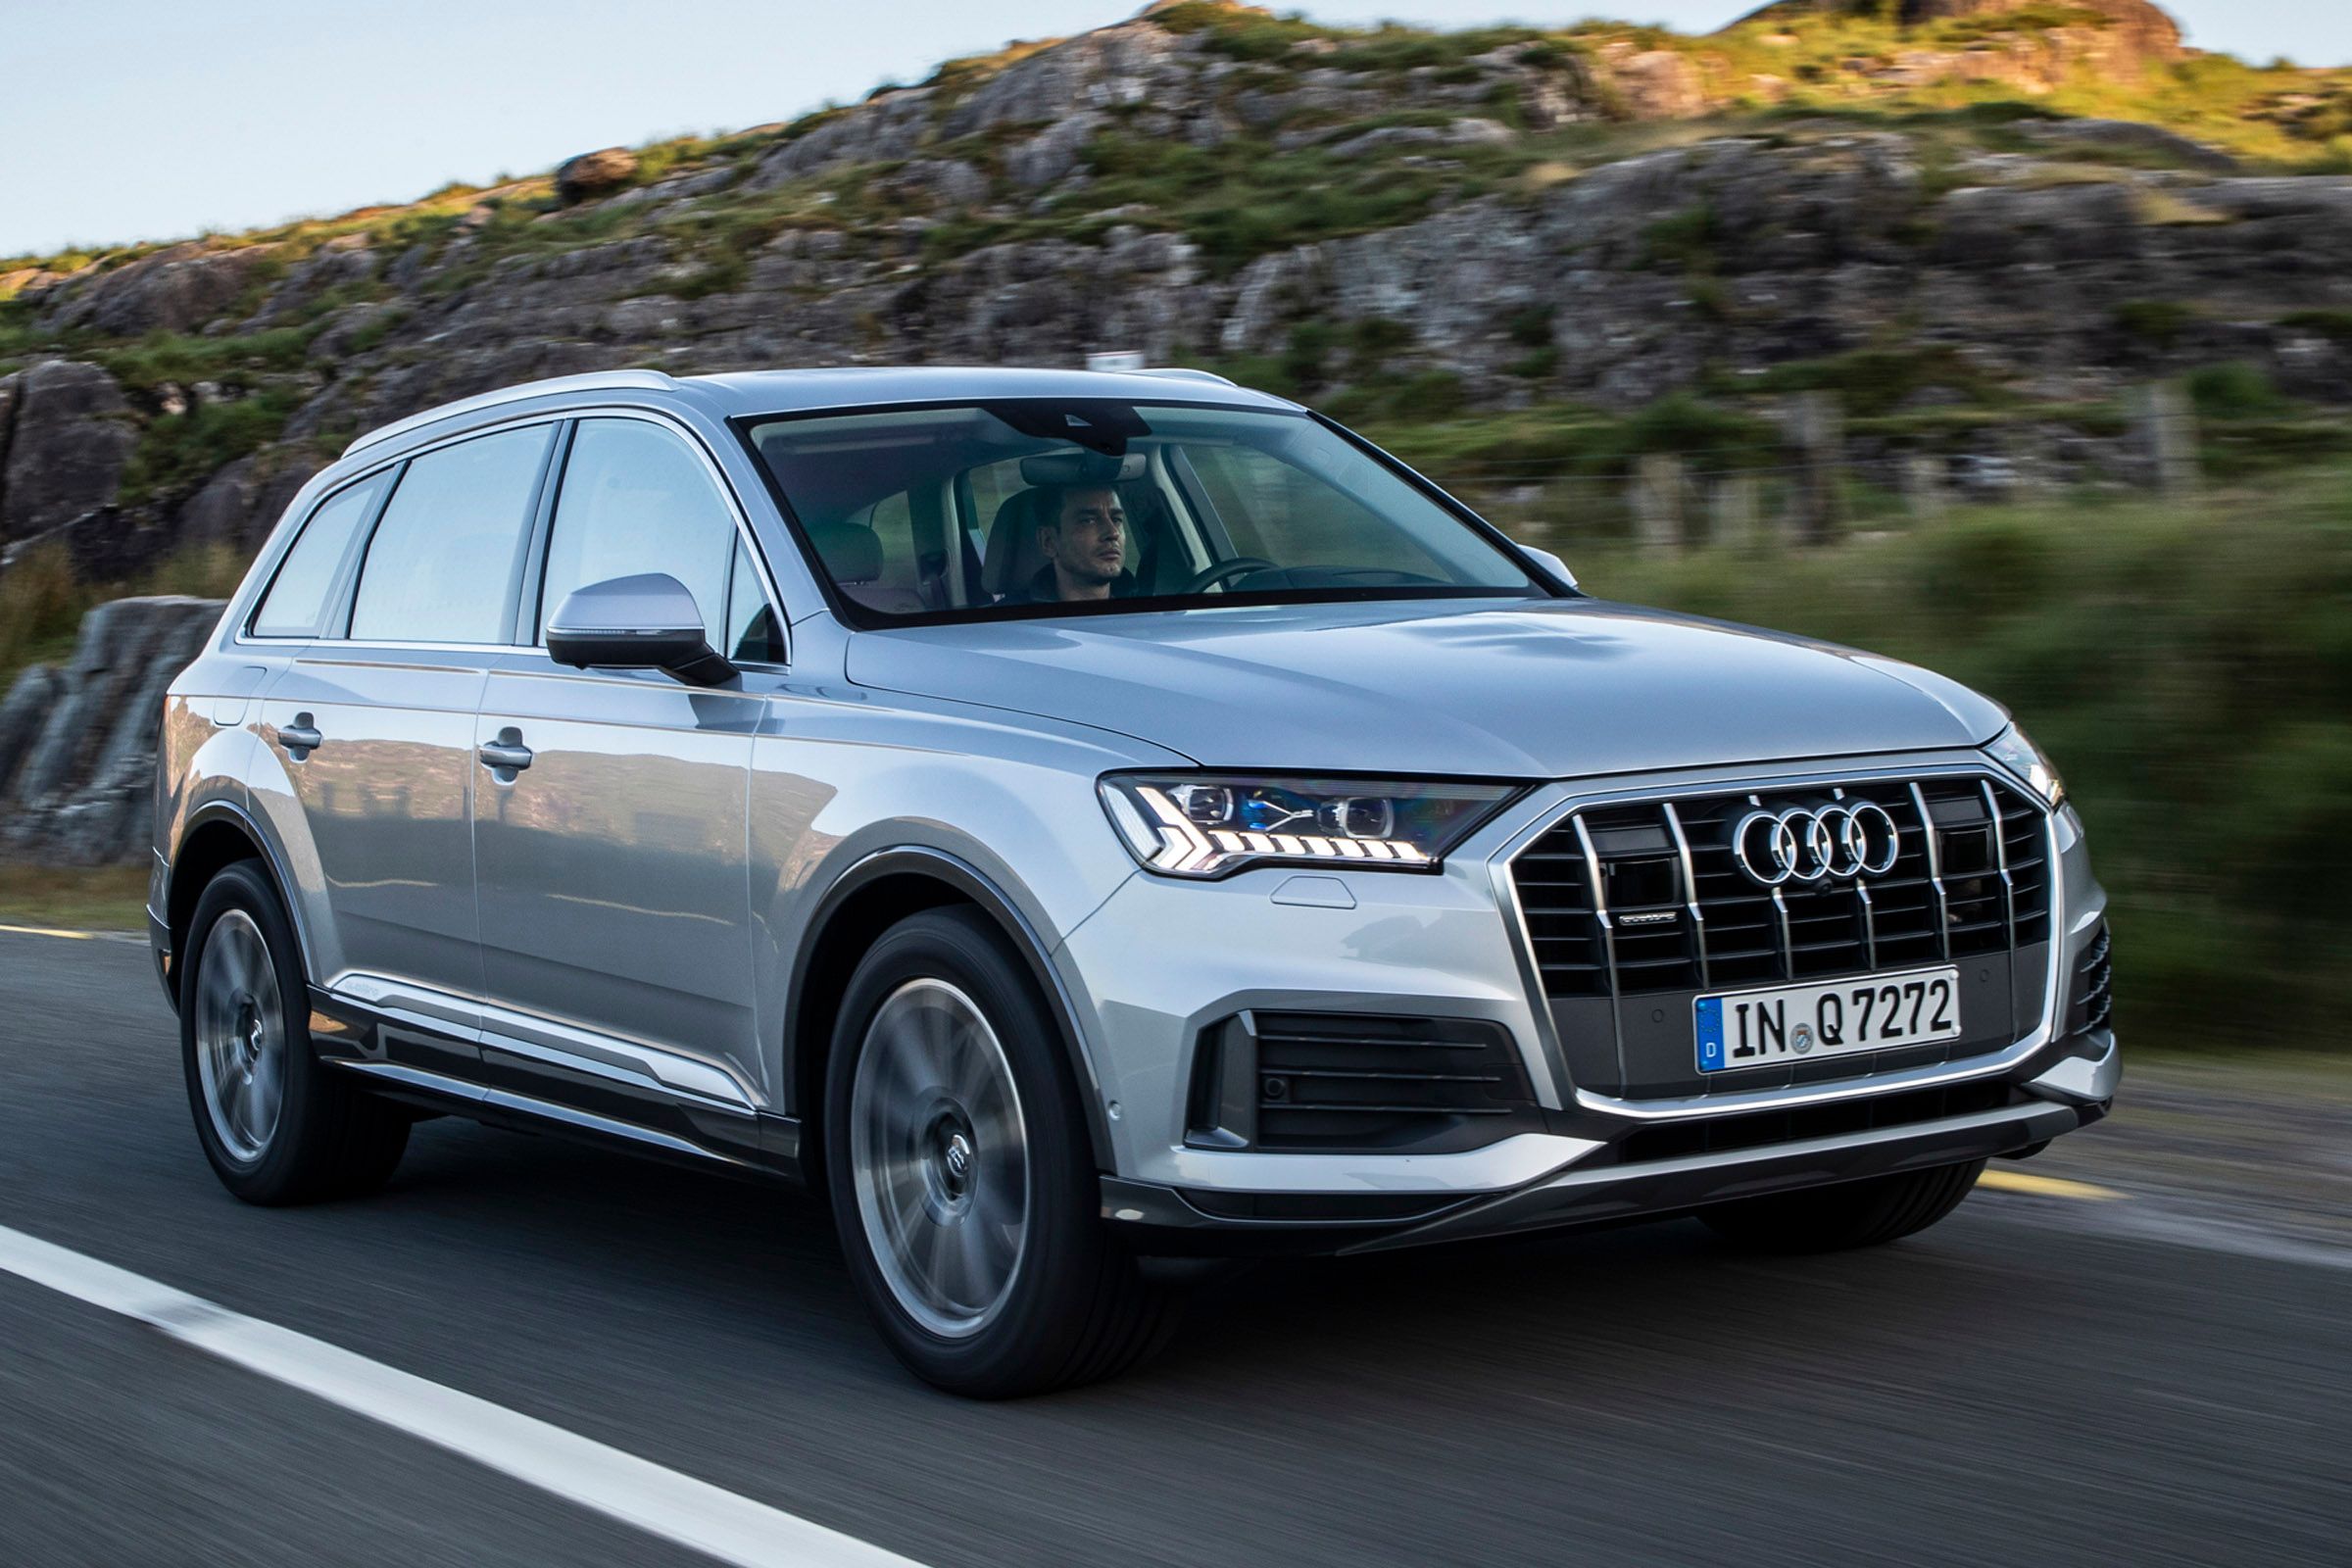 Audi offers the Q7 in three trims, Premium, Premium Plus, and Prestige